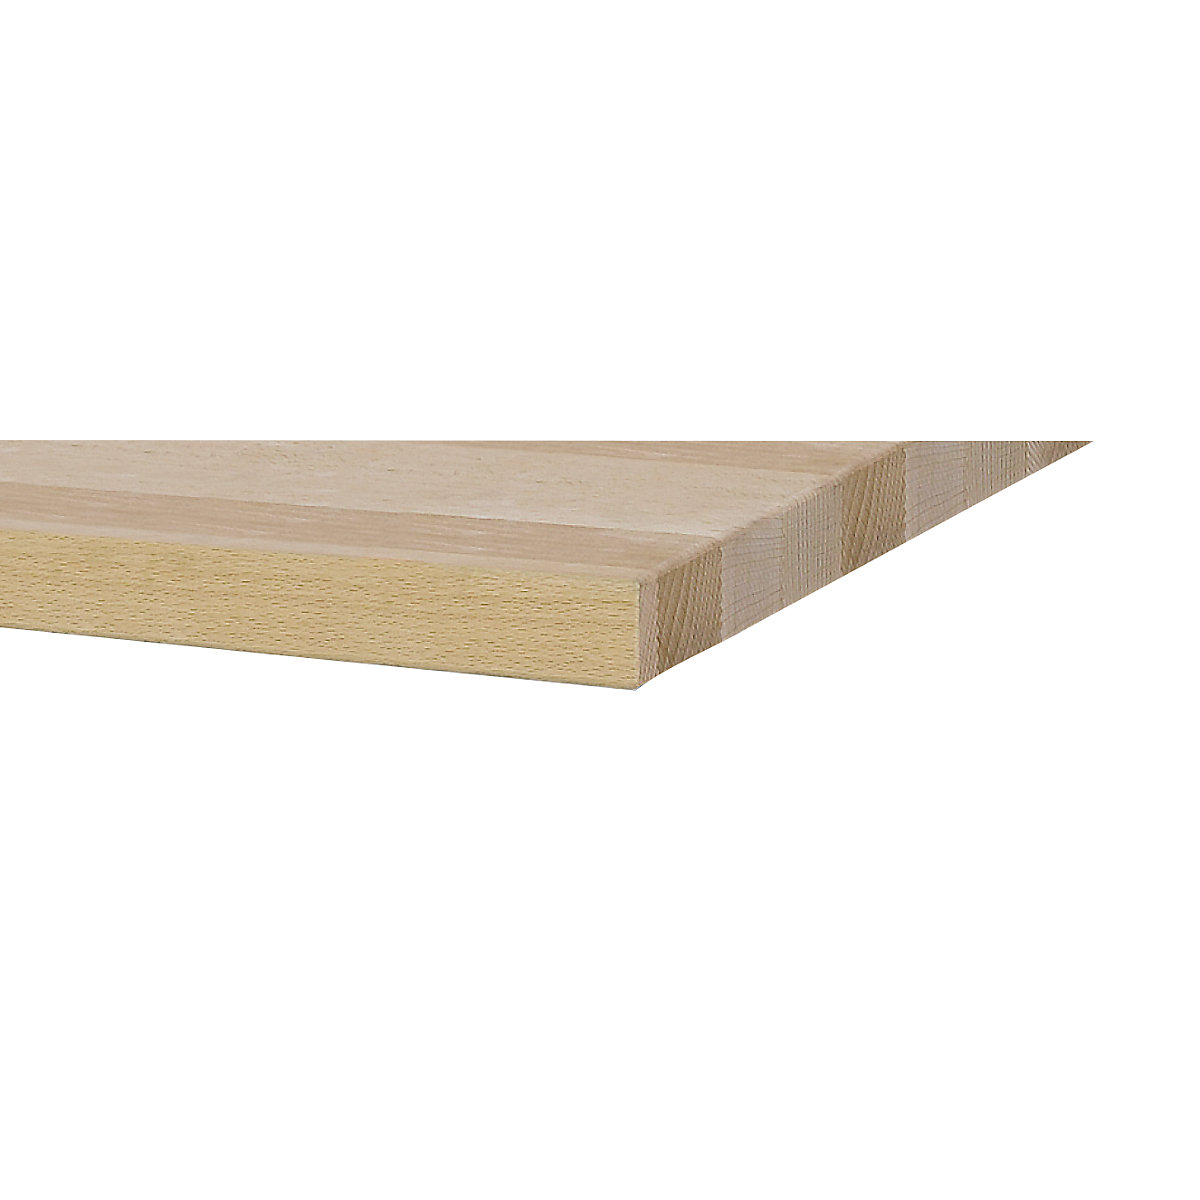 Stół warsztatowy, szerokość 1500 mm, konstrukcja ramowa – ANKE (Zdjęcie produktu 4)-3